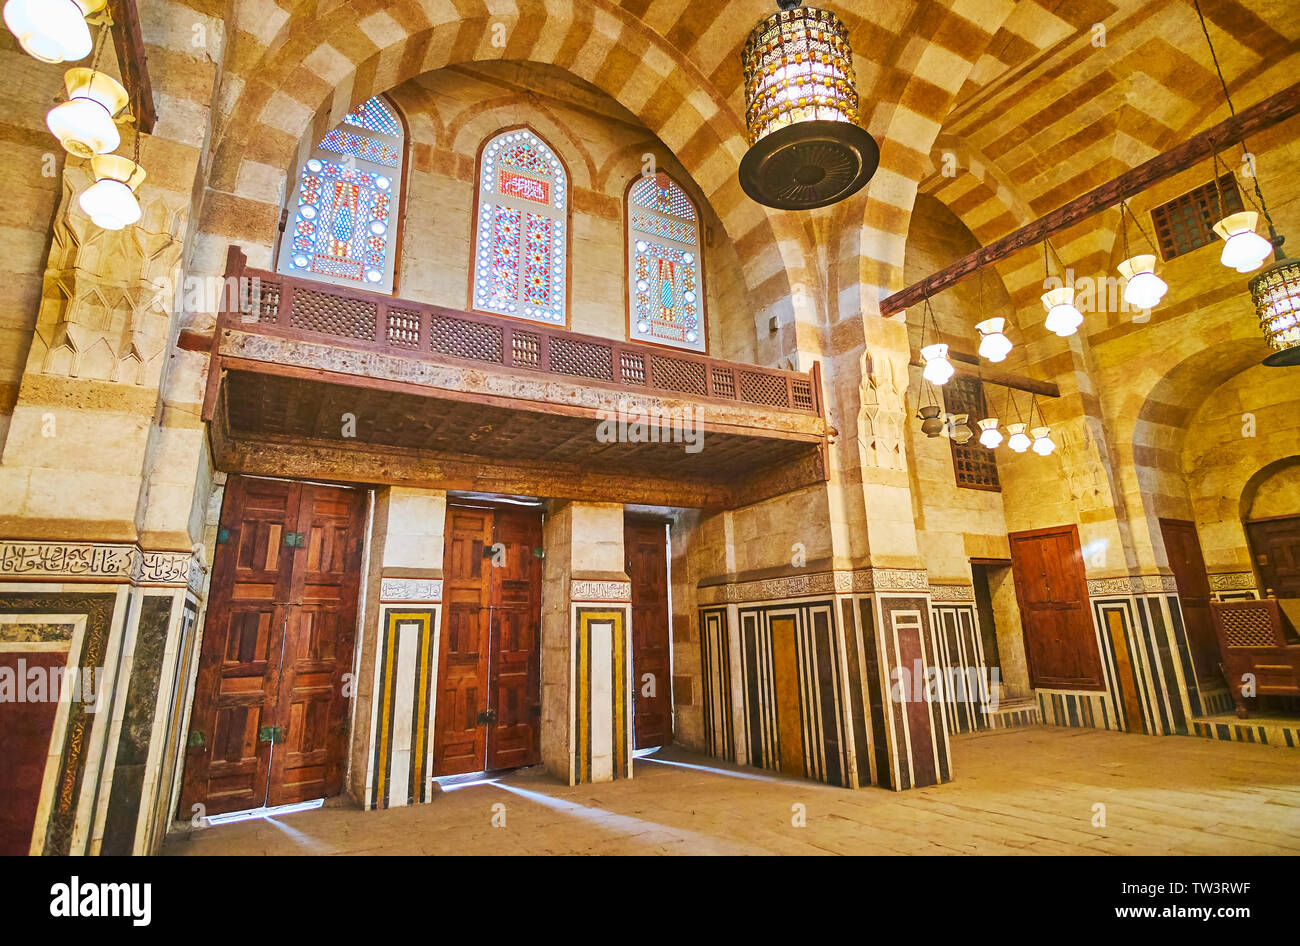 Il Cairo, Egitto - 22 dicembre 2017: Khayrbak moschea è stata costruita nel periodo Ottomano in stile Mamluk, vanta di legno intagliato, dettagli intarsio di pietra, Ablaq str Foto Stock